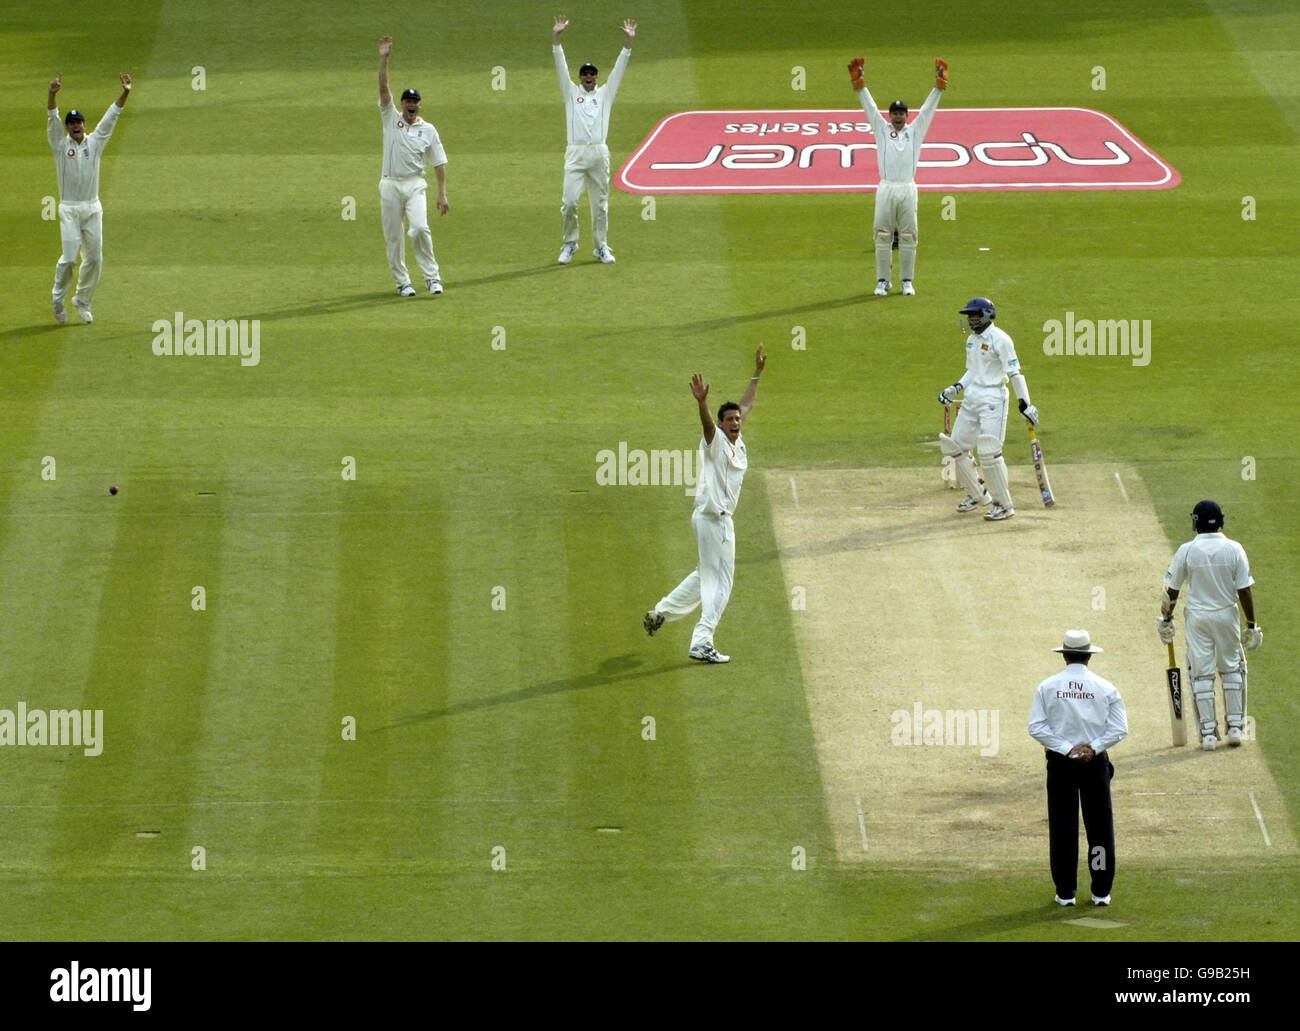 Der englische Sajid Mahmood (c) feiert sein zweites Wicket gegen Sri Lanka bei seinem Debüt, am zweiten Tag des ersten npower Test Matches auf Lord's Cricket Ground, London. Stockfoto